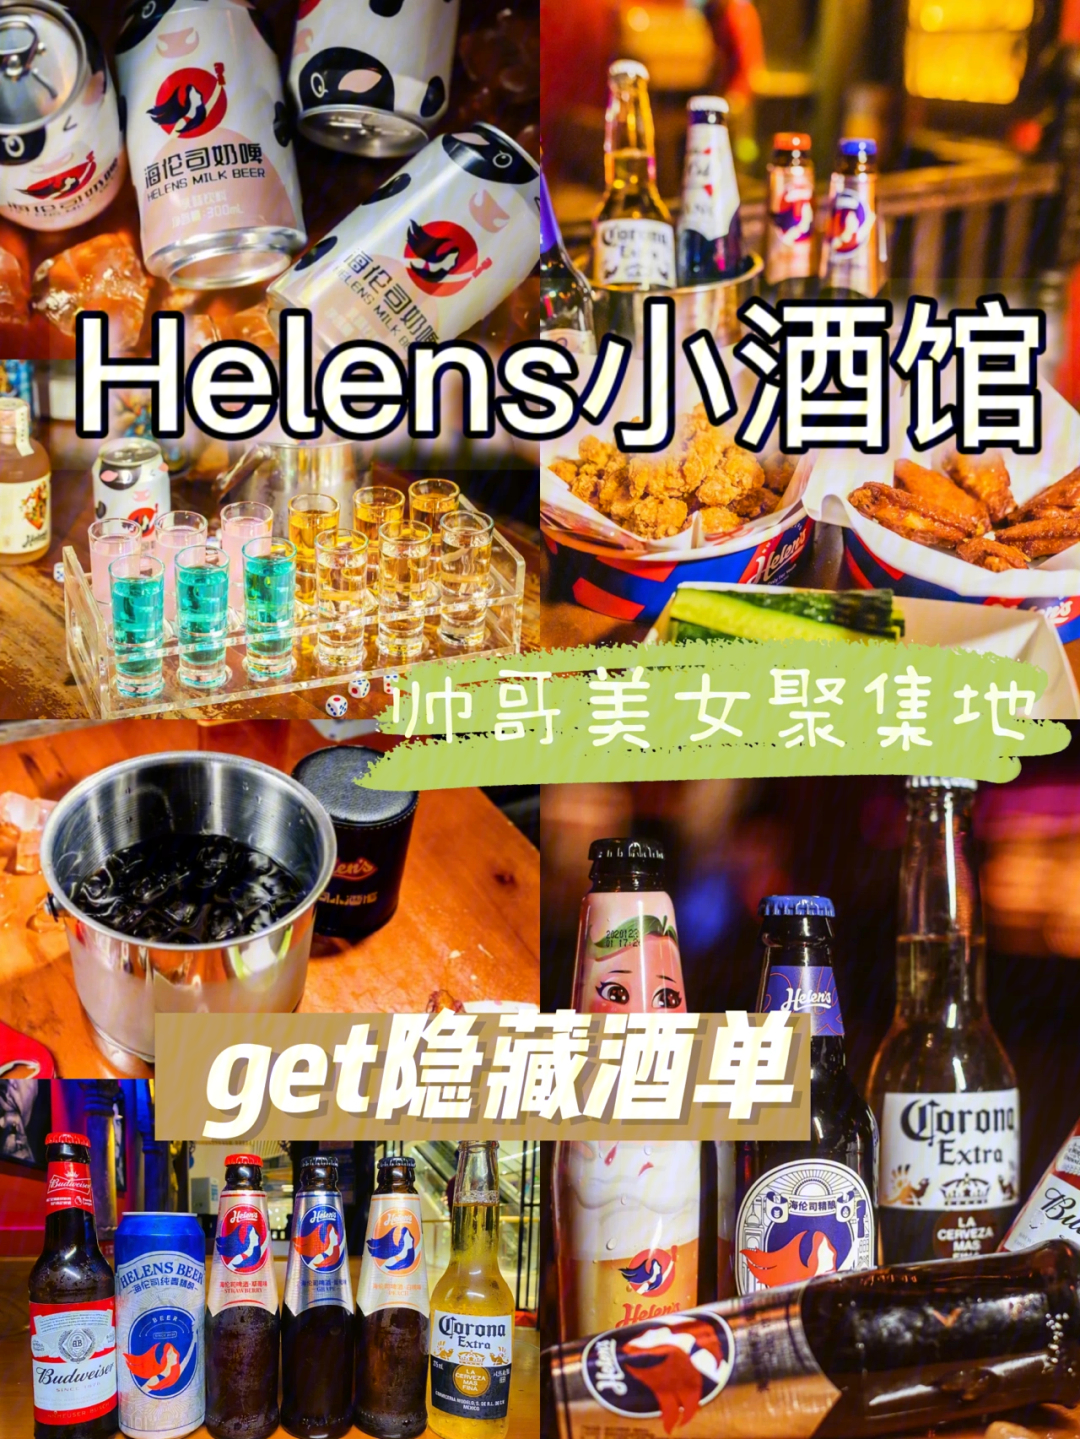 海伦斯酒吧菜单图片